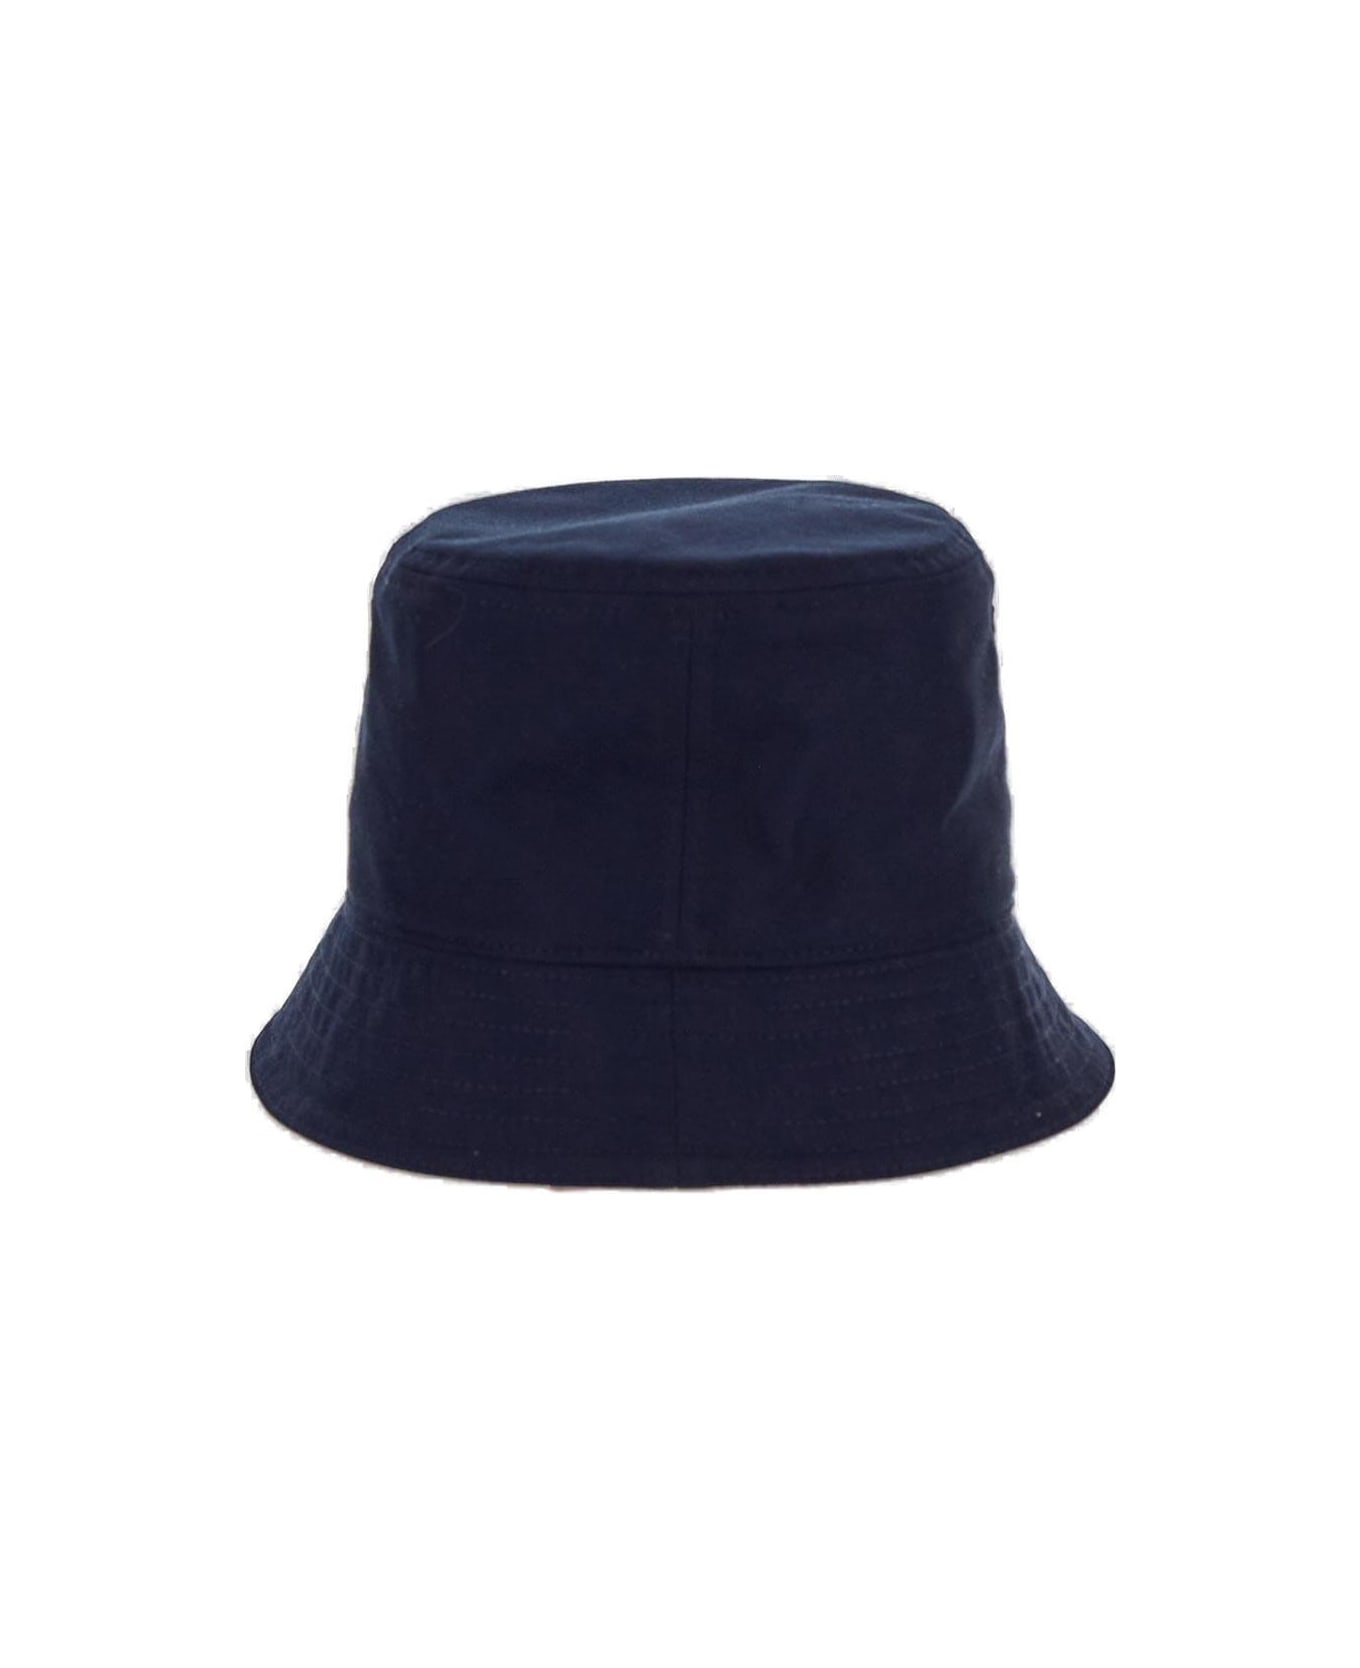 Valentino Garavani Garavani Logo Embroidered Bucket Hat - NAVY 帽子